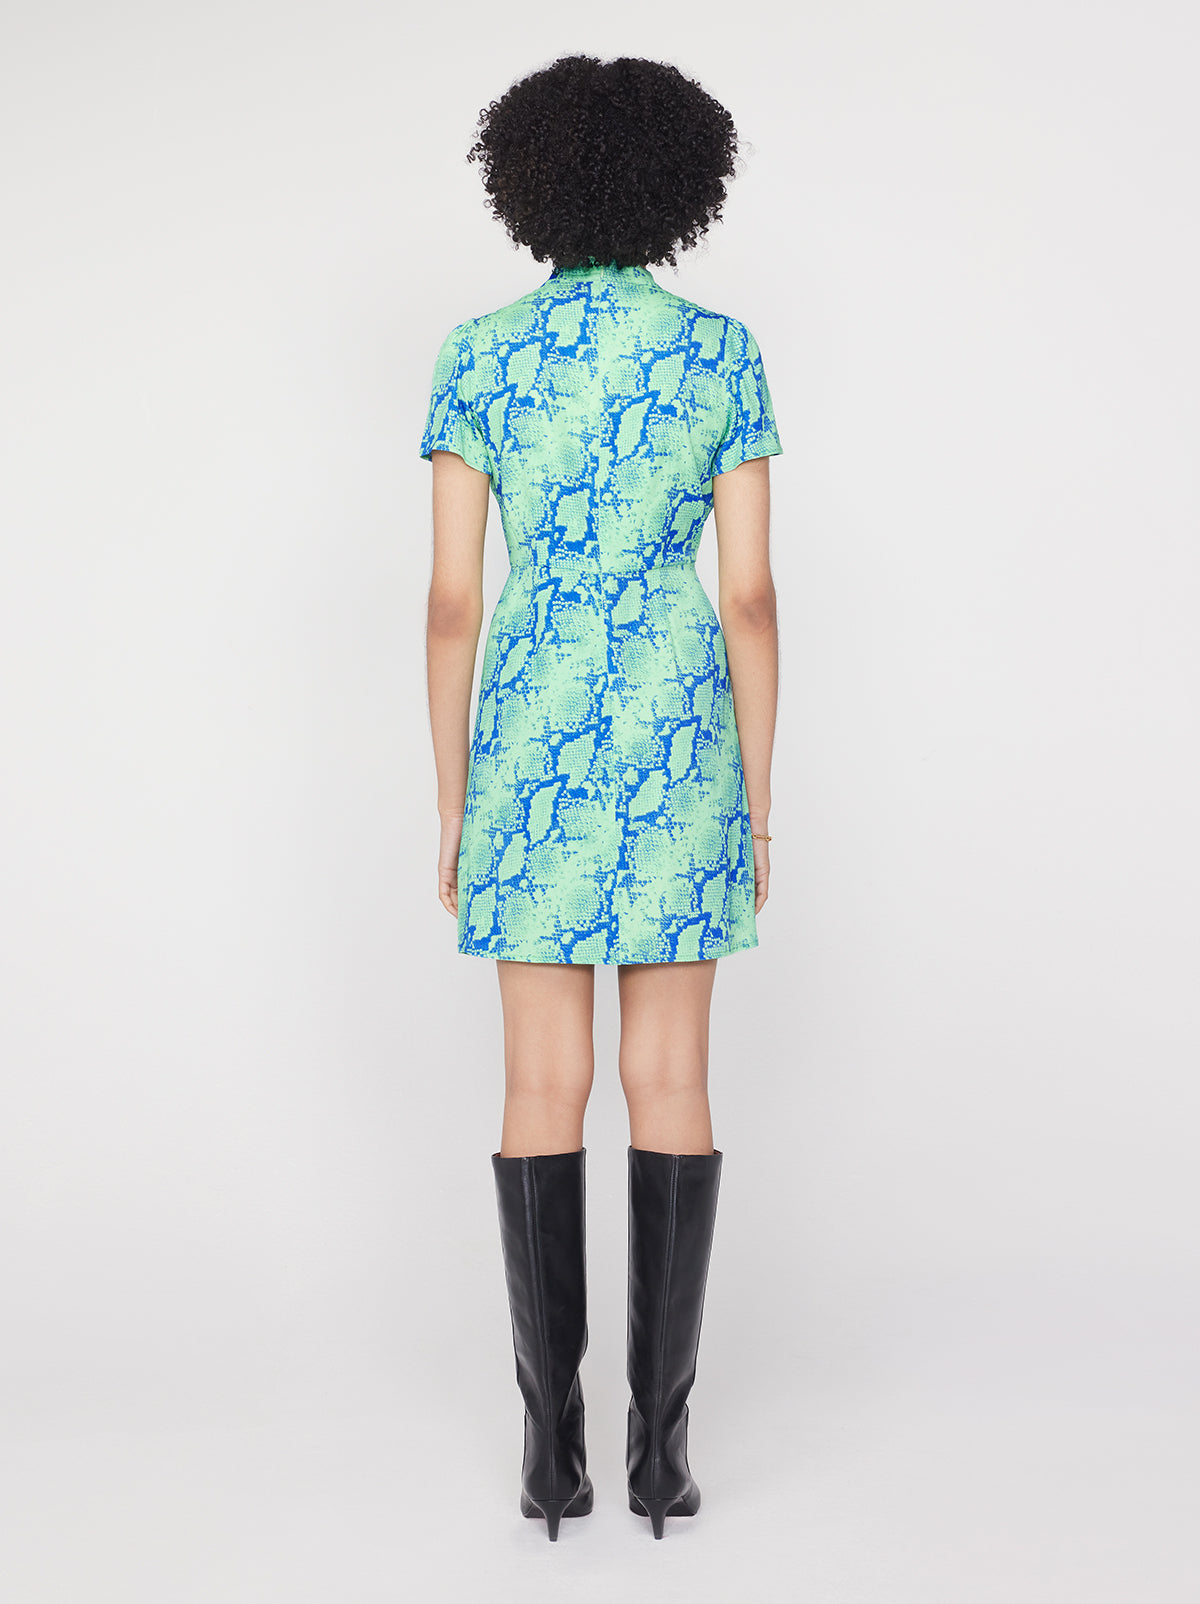 Imogen Blue Snake Print Mini Dress By KITRI Studio